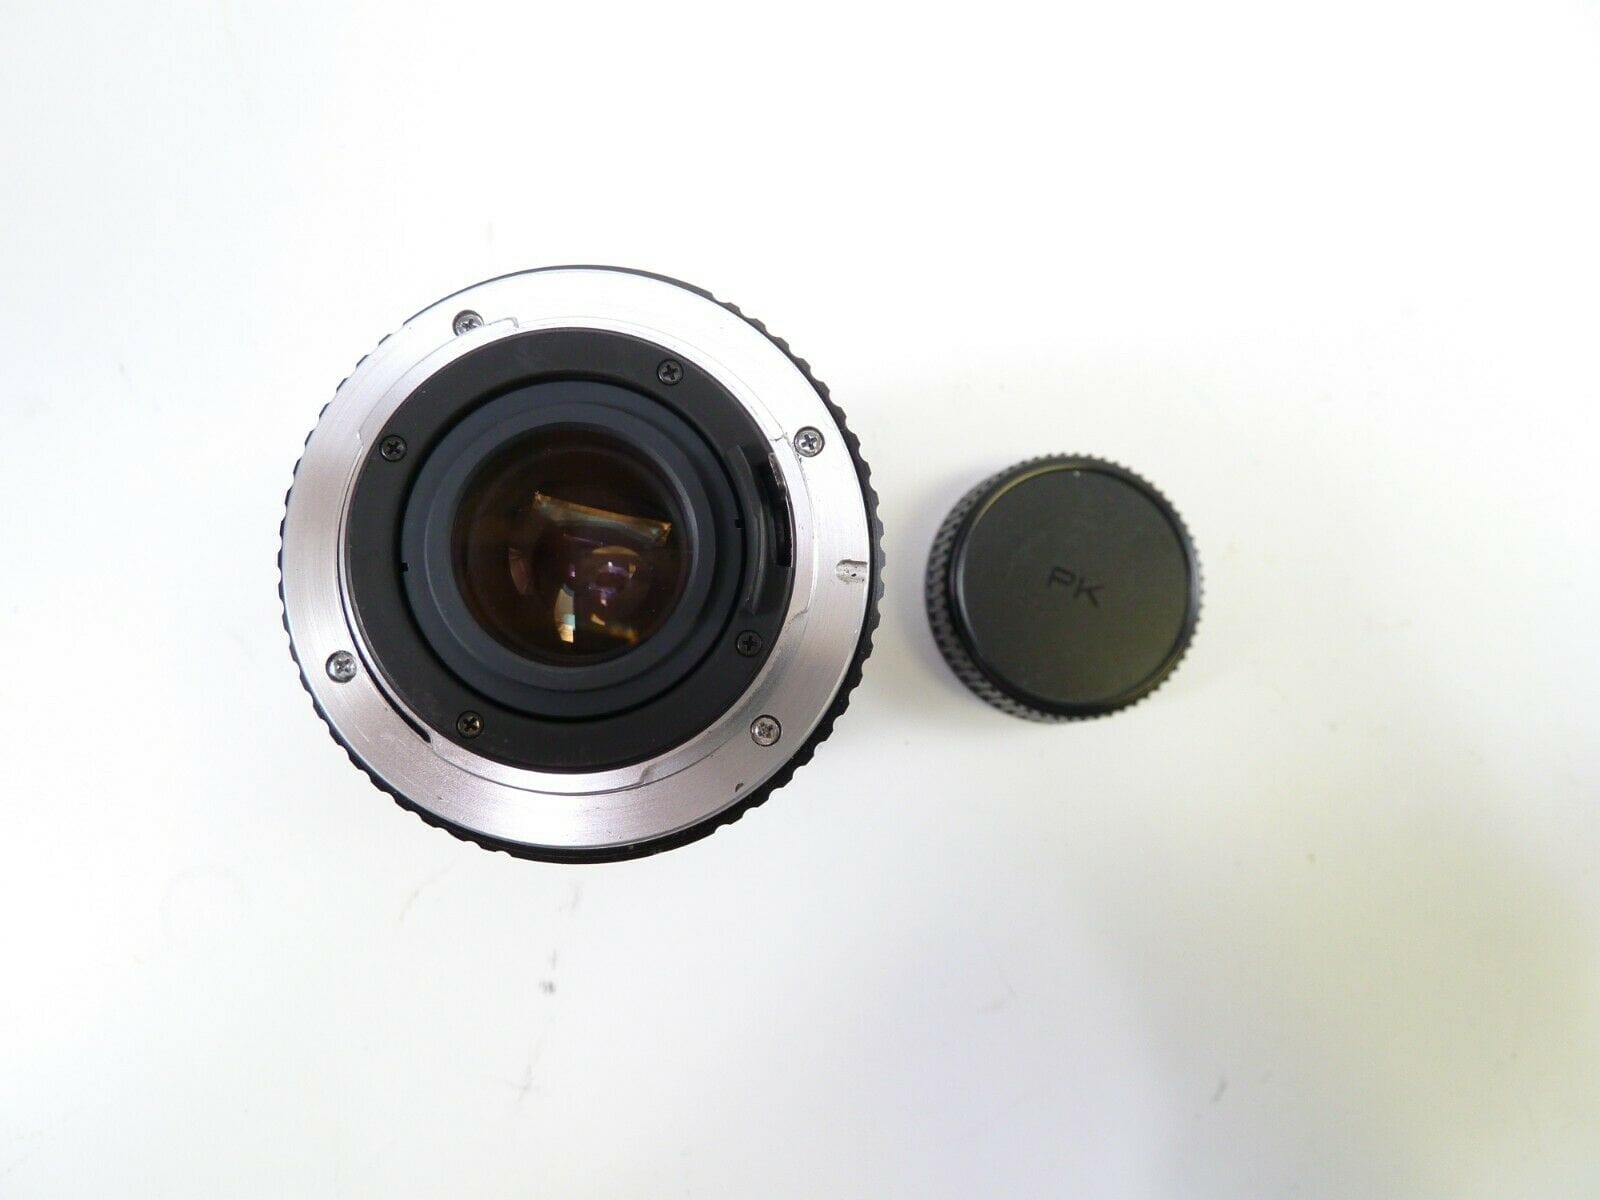 Super Cosina 80-200mm F/4.5-5.6 MC Macro Lens